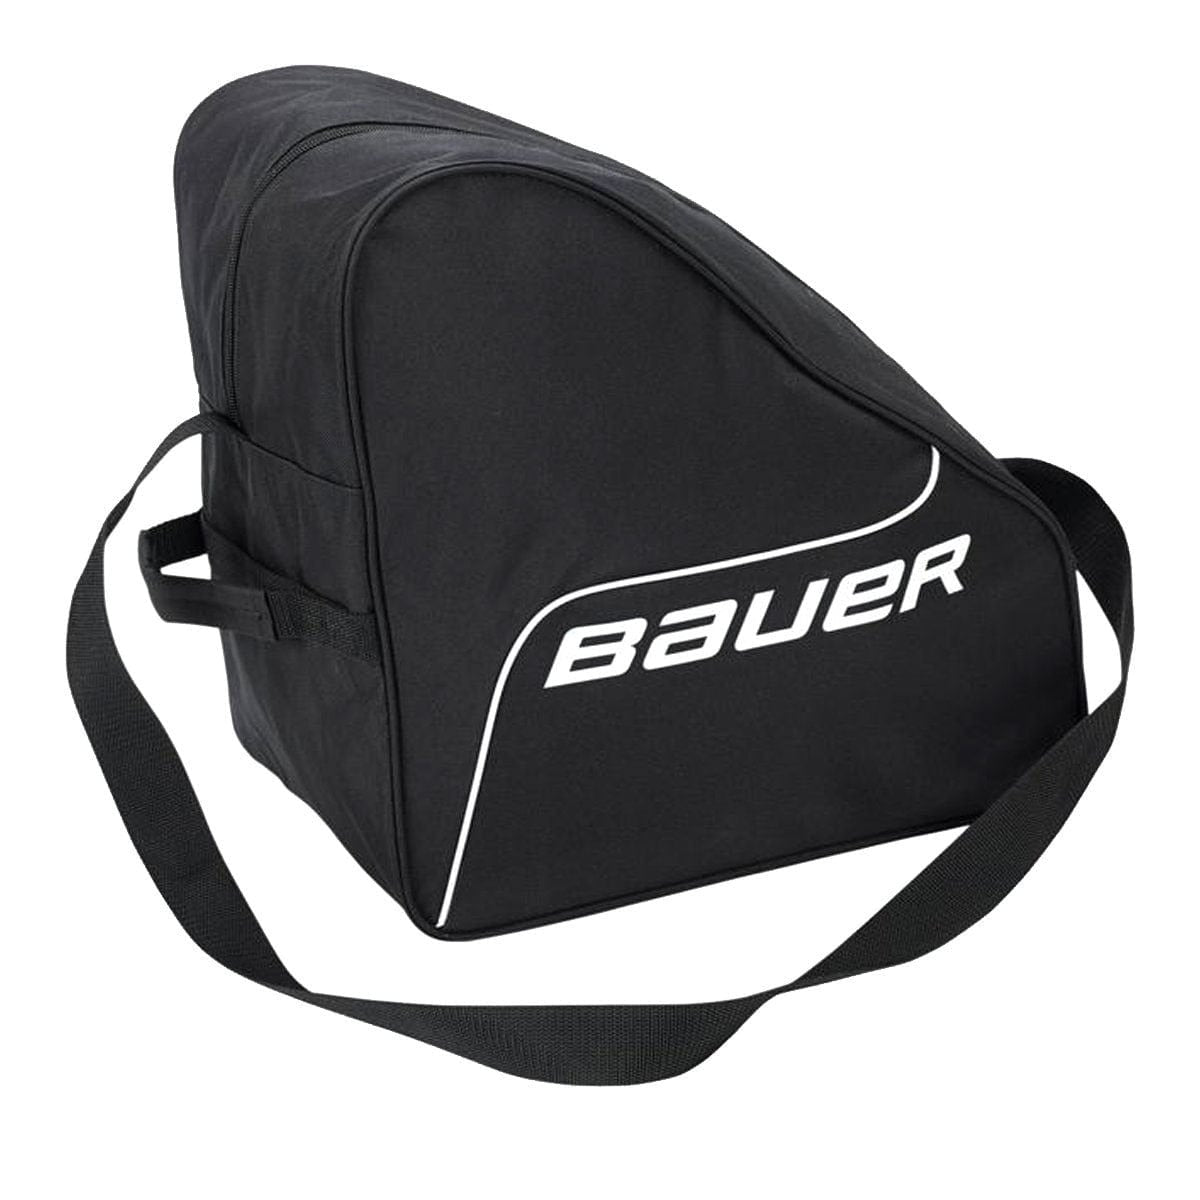 Bauer Skate Bag